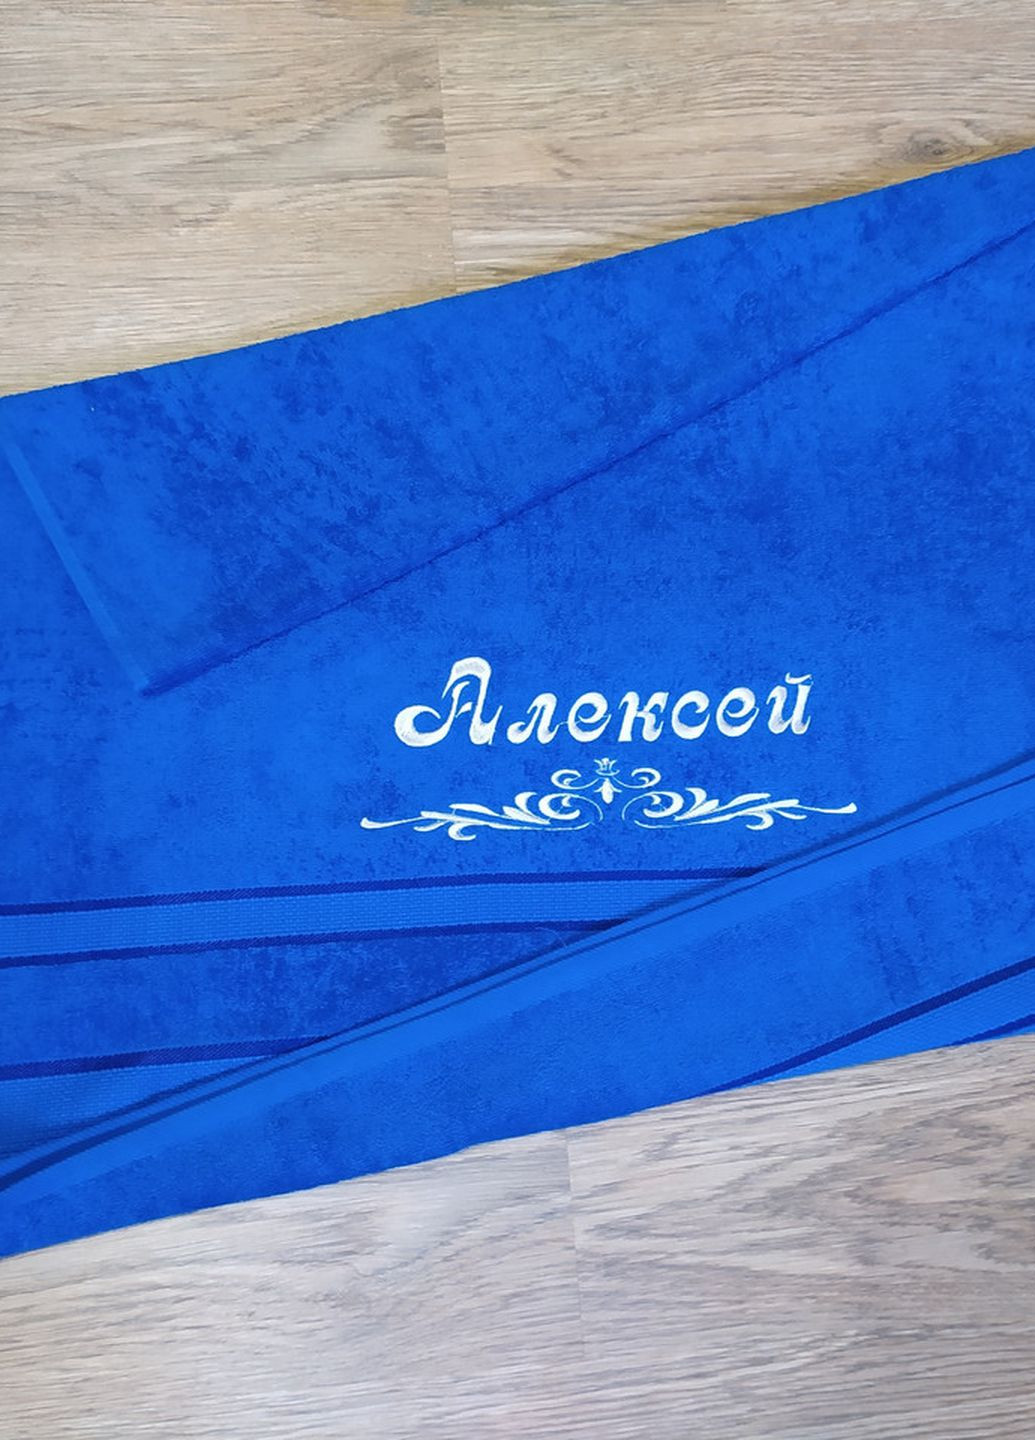 No Brand полотенце с именной вышивкой махровое банное 70*140 синий алексей 00023 однотонный синий производство - Украина